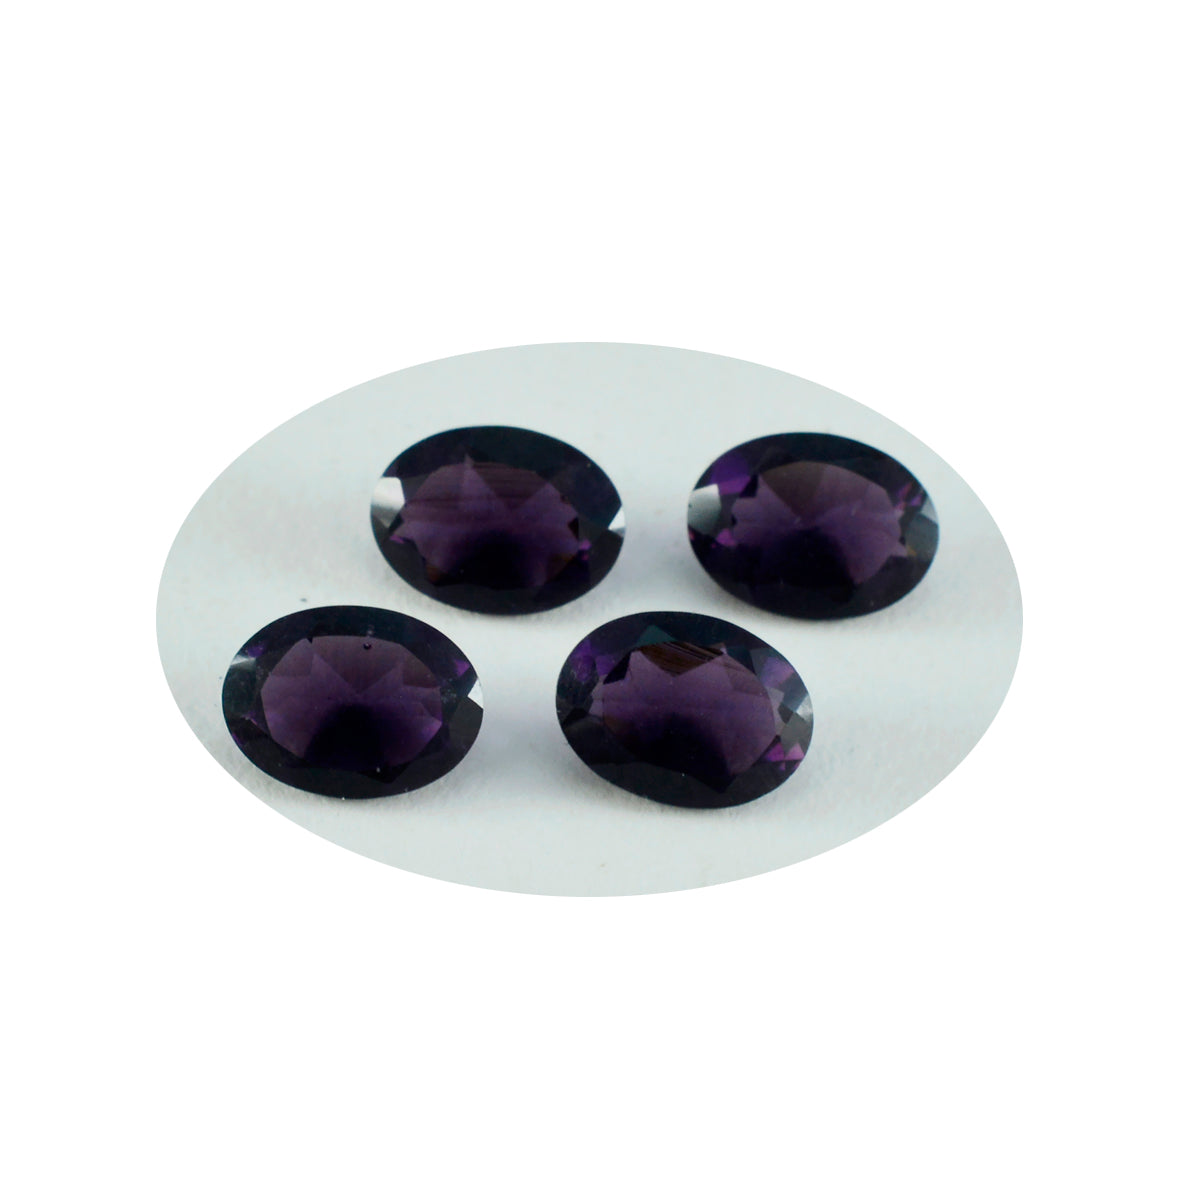 Riyogems 1PC Purple Amethyst CZ Faceted 8x10 mm Oval Shape wonderful Quality Gemstone